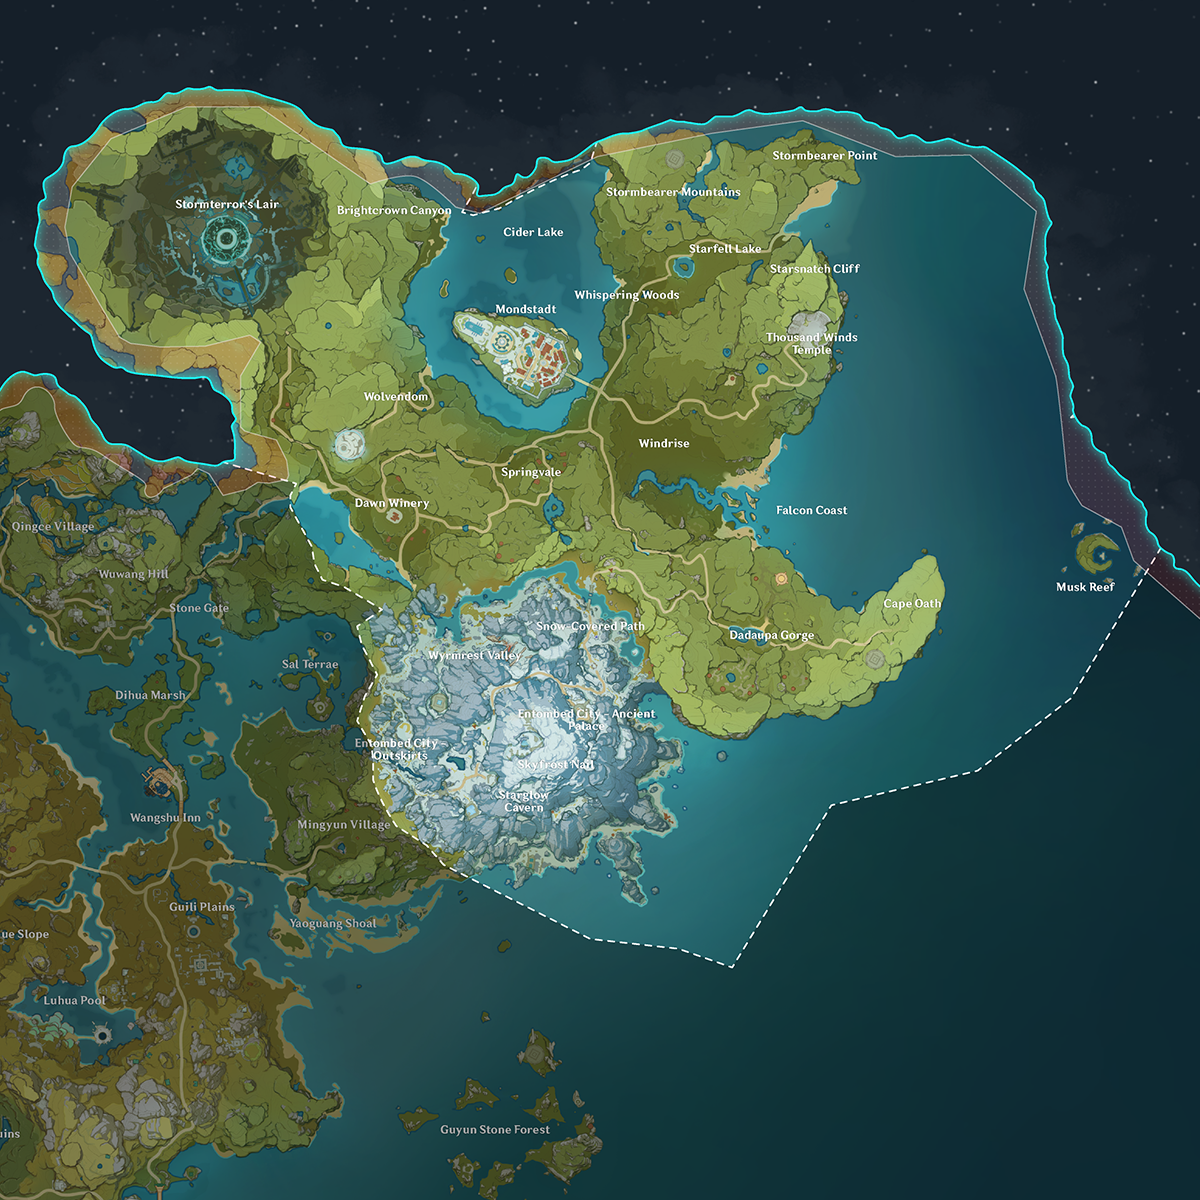 Nếu bạn đang tìm kiếm thông tin về Mondstadt, bạn không thể bỏ qua Wiki Genshin Impact! Cập nhật mới nhất và chính xác nhất về thành phố và những bí mật ẩn giấu sẽ giúp bạn khám phá thế giới trong game. Đừng quên tìm kiếm bản đồ nguyên liệu Genshin Impact để giúp bạn chinh phục thử thách mới!